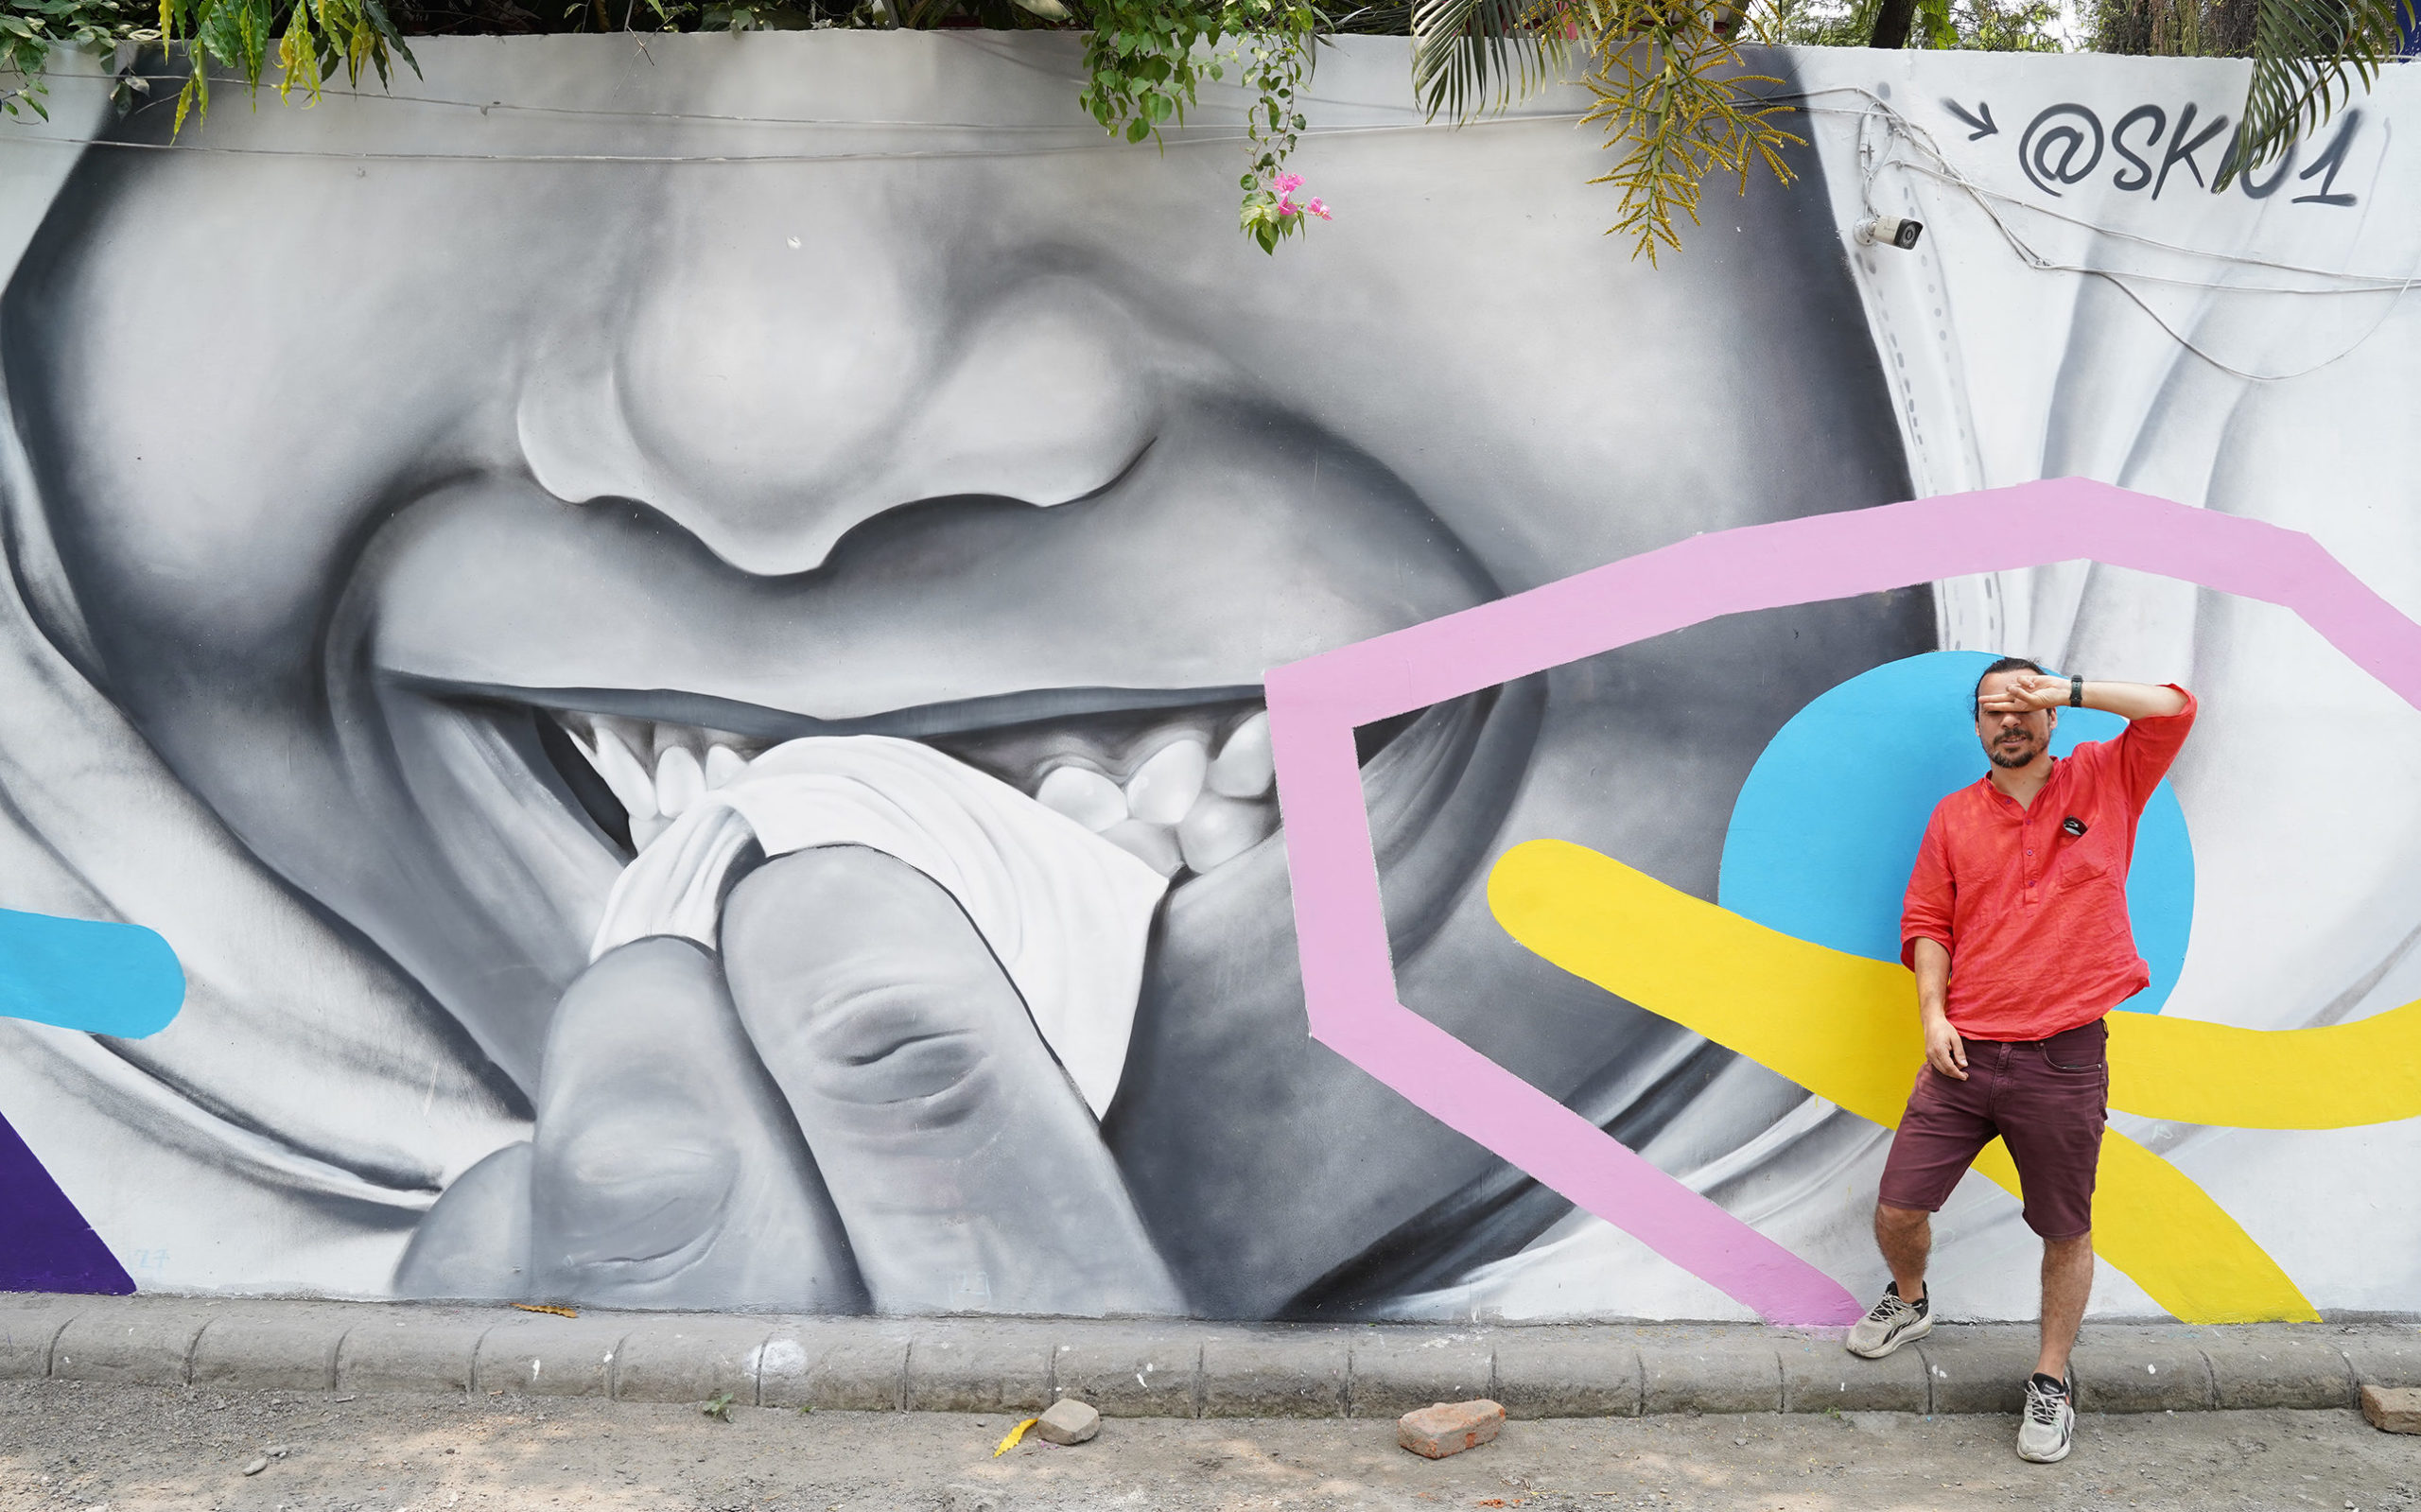 Artiste skio posant devant une de ses fresque murale colorées dans la ville